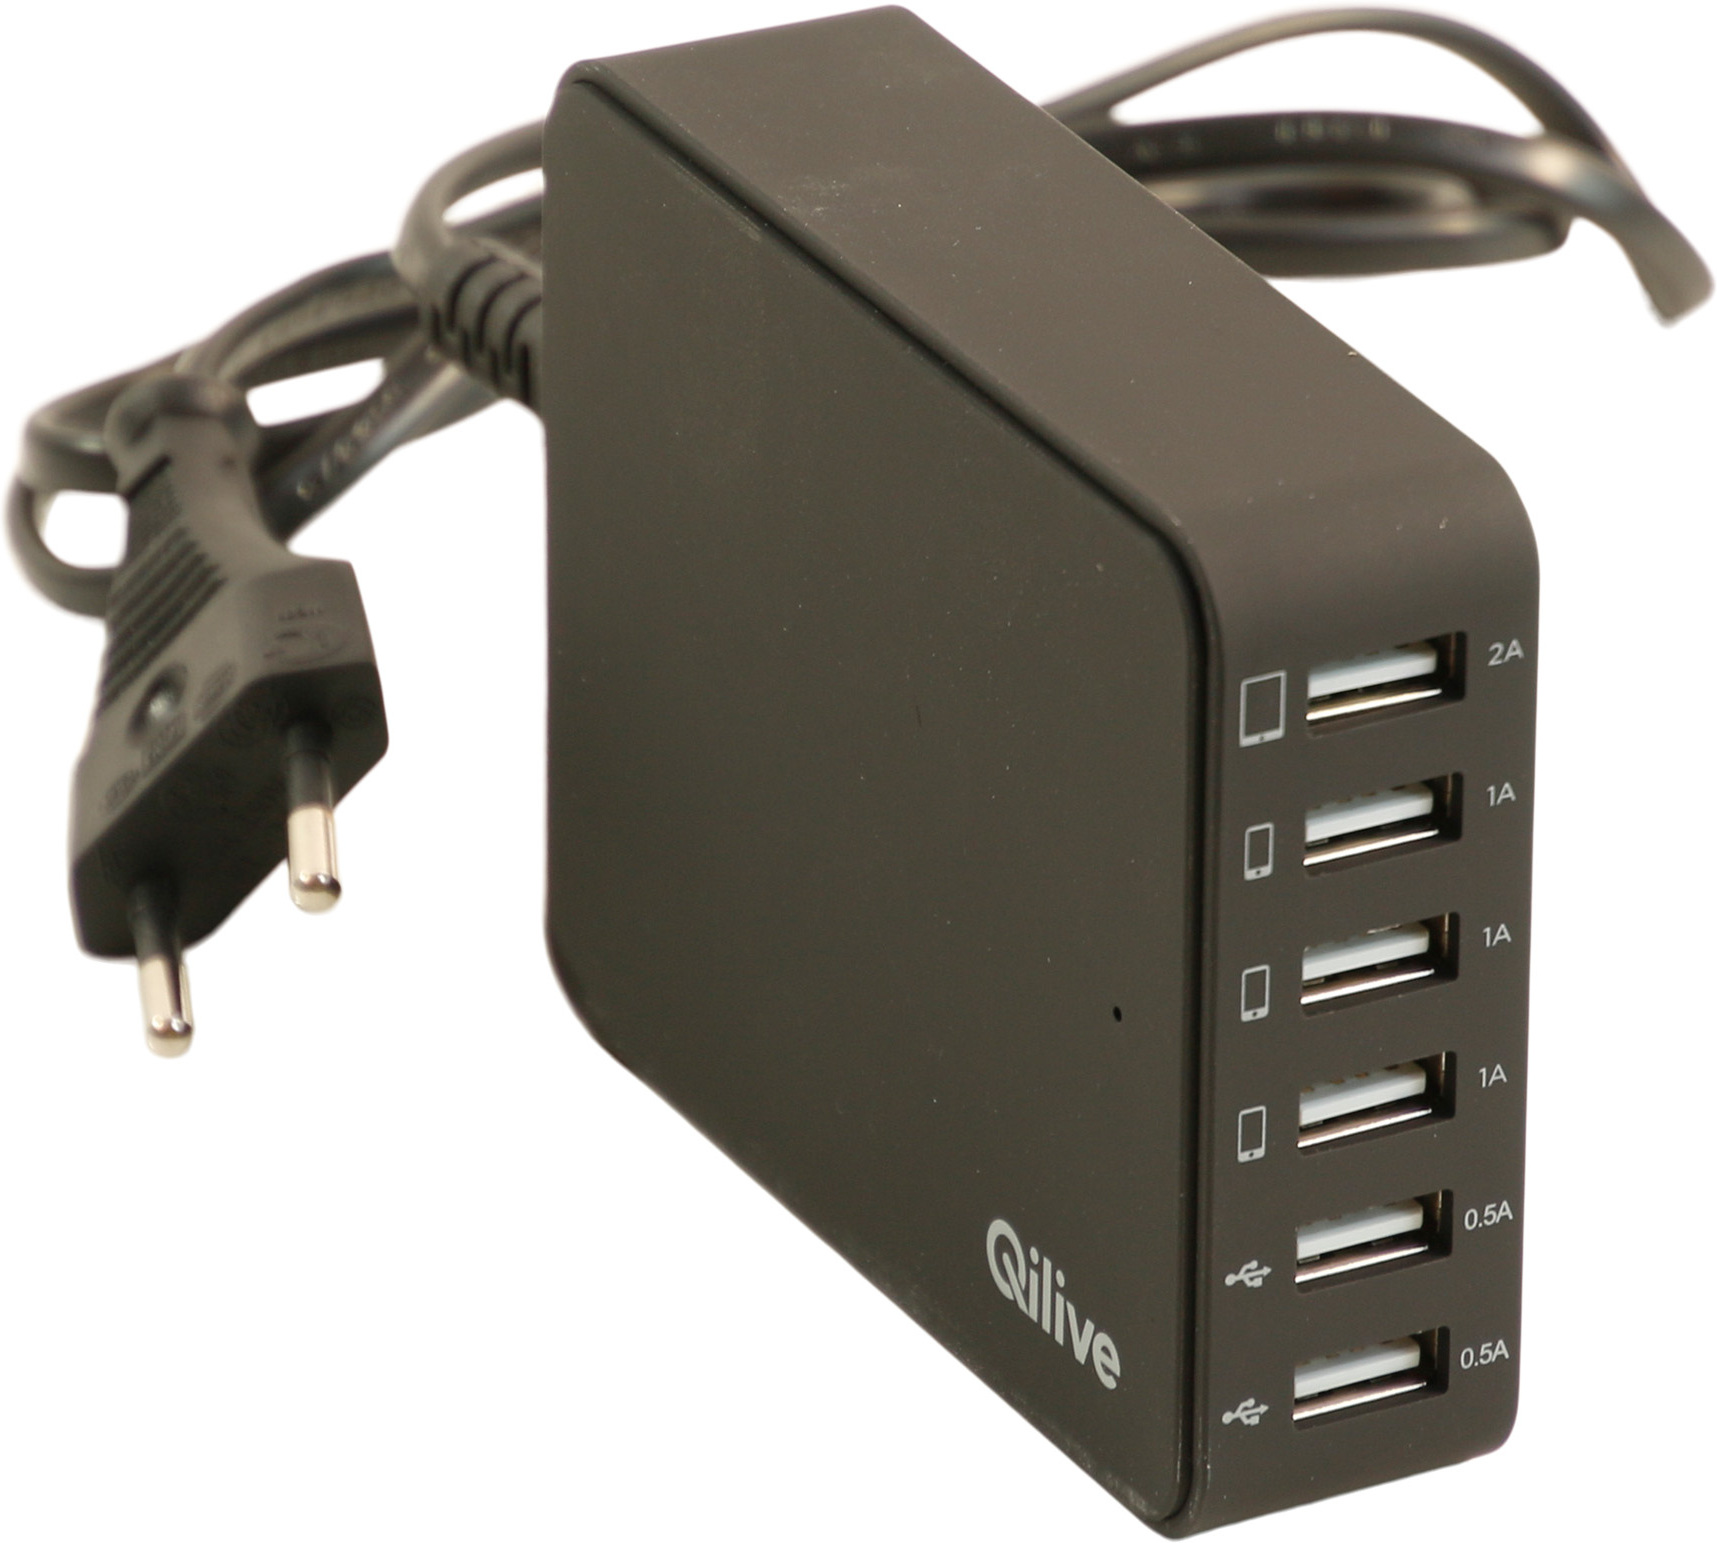 Qilive 861887 Host-Schnittstelle: USB 2.0.
Hub-Schnittstelle: USB 2.0. Farbe: Schwarz